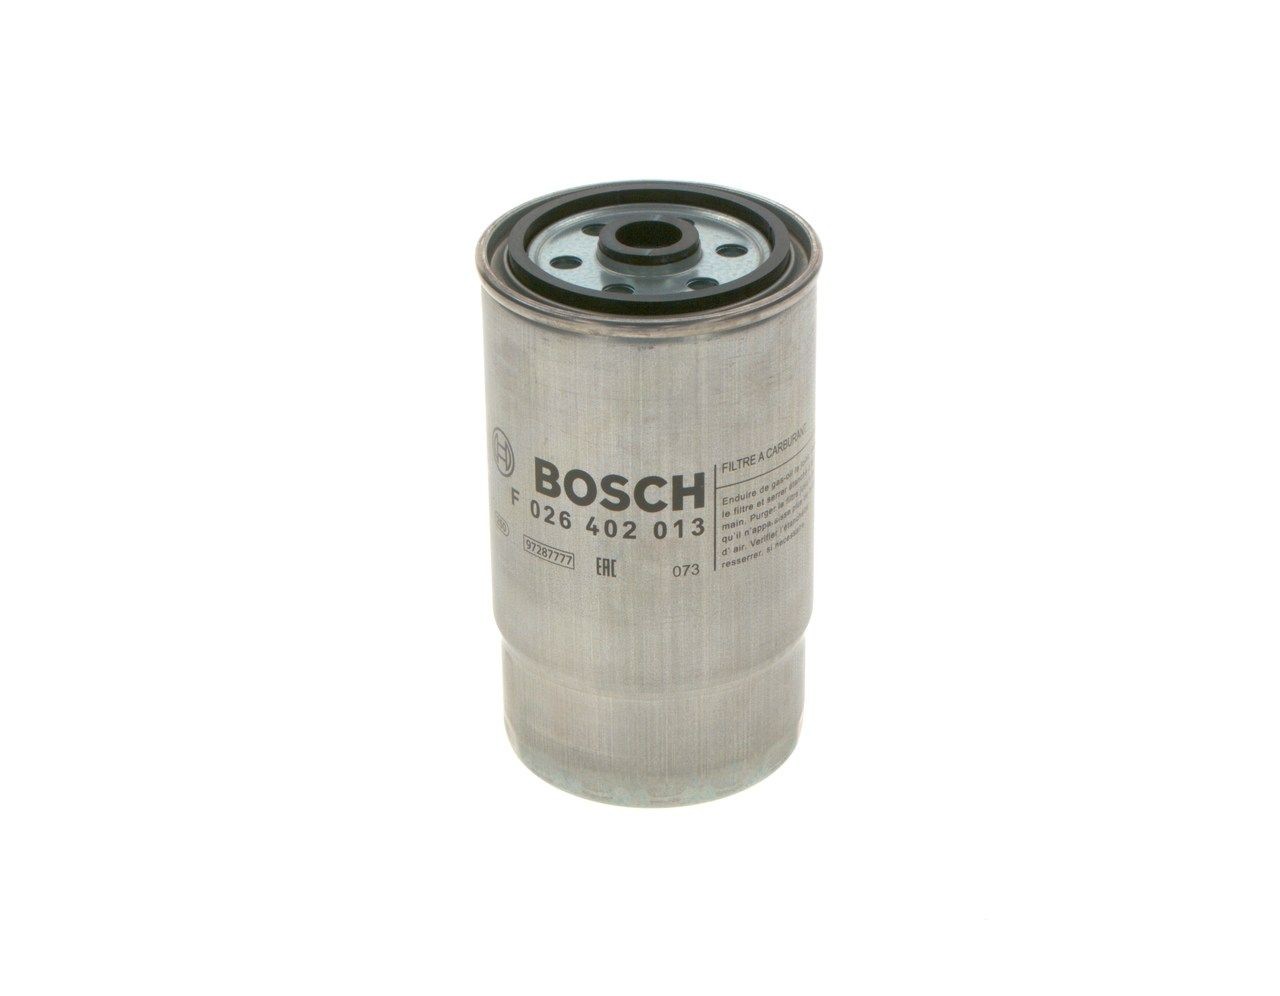 BOSCH Fuel filter F 026 402 013